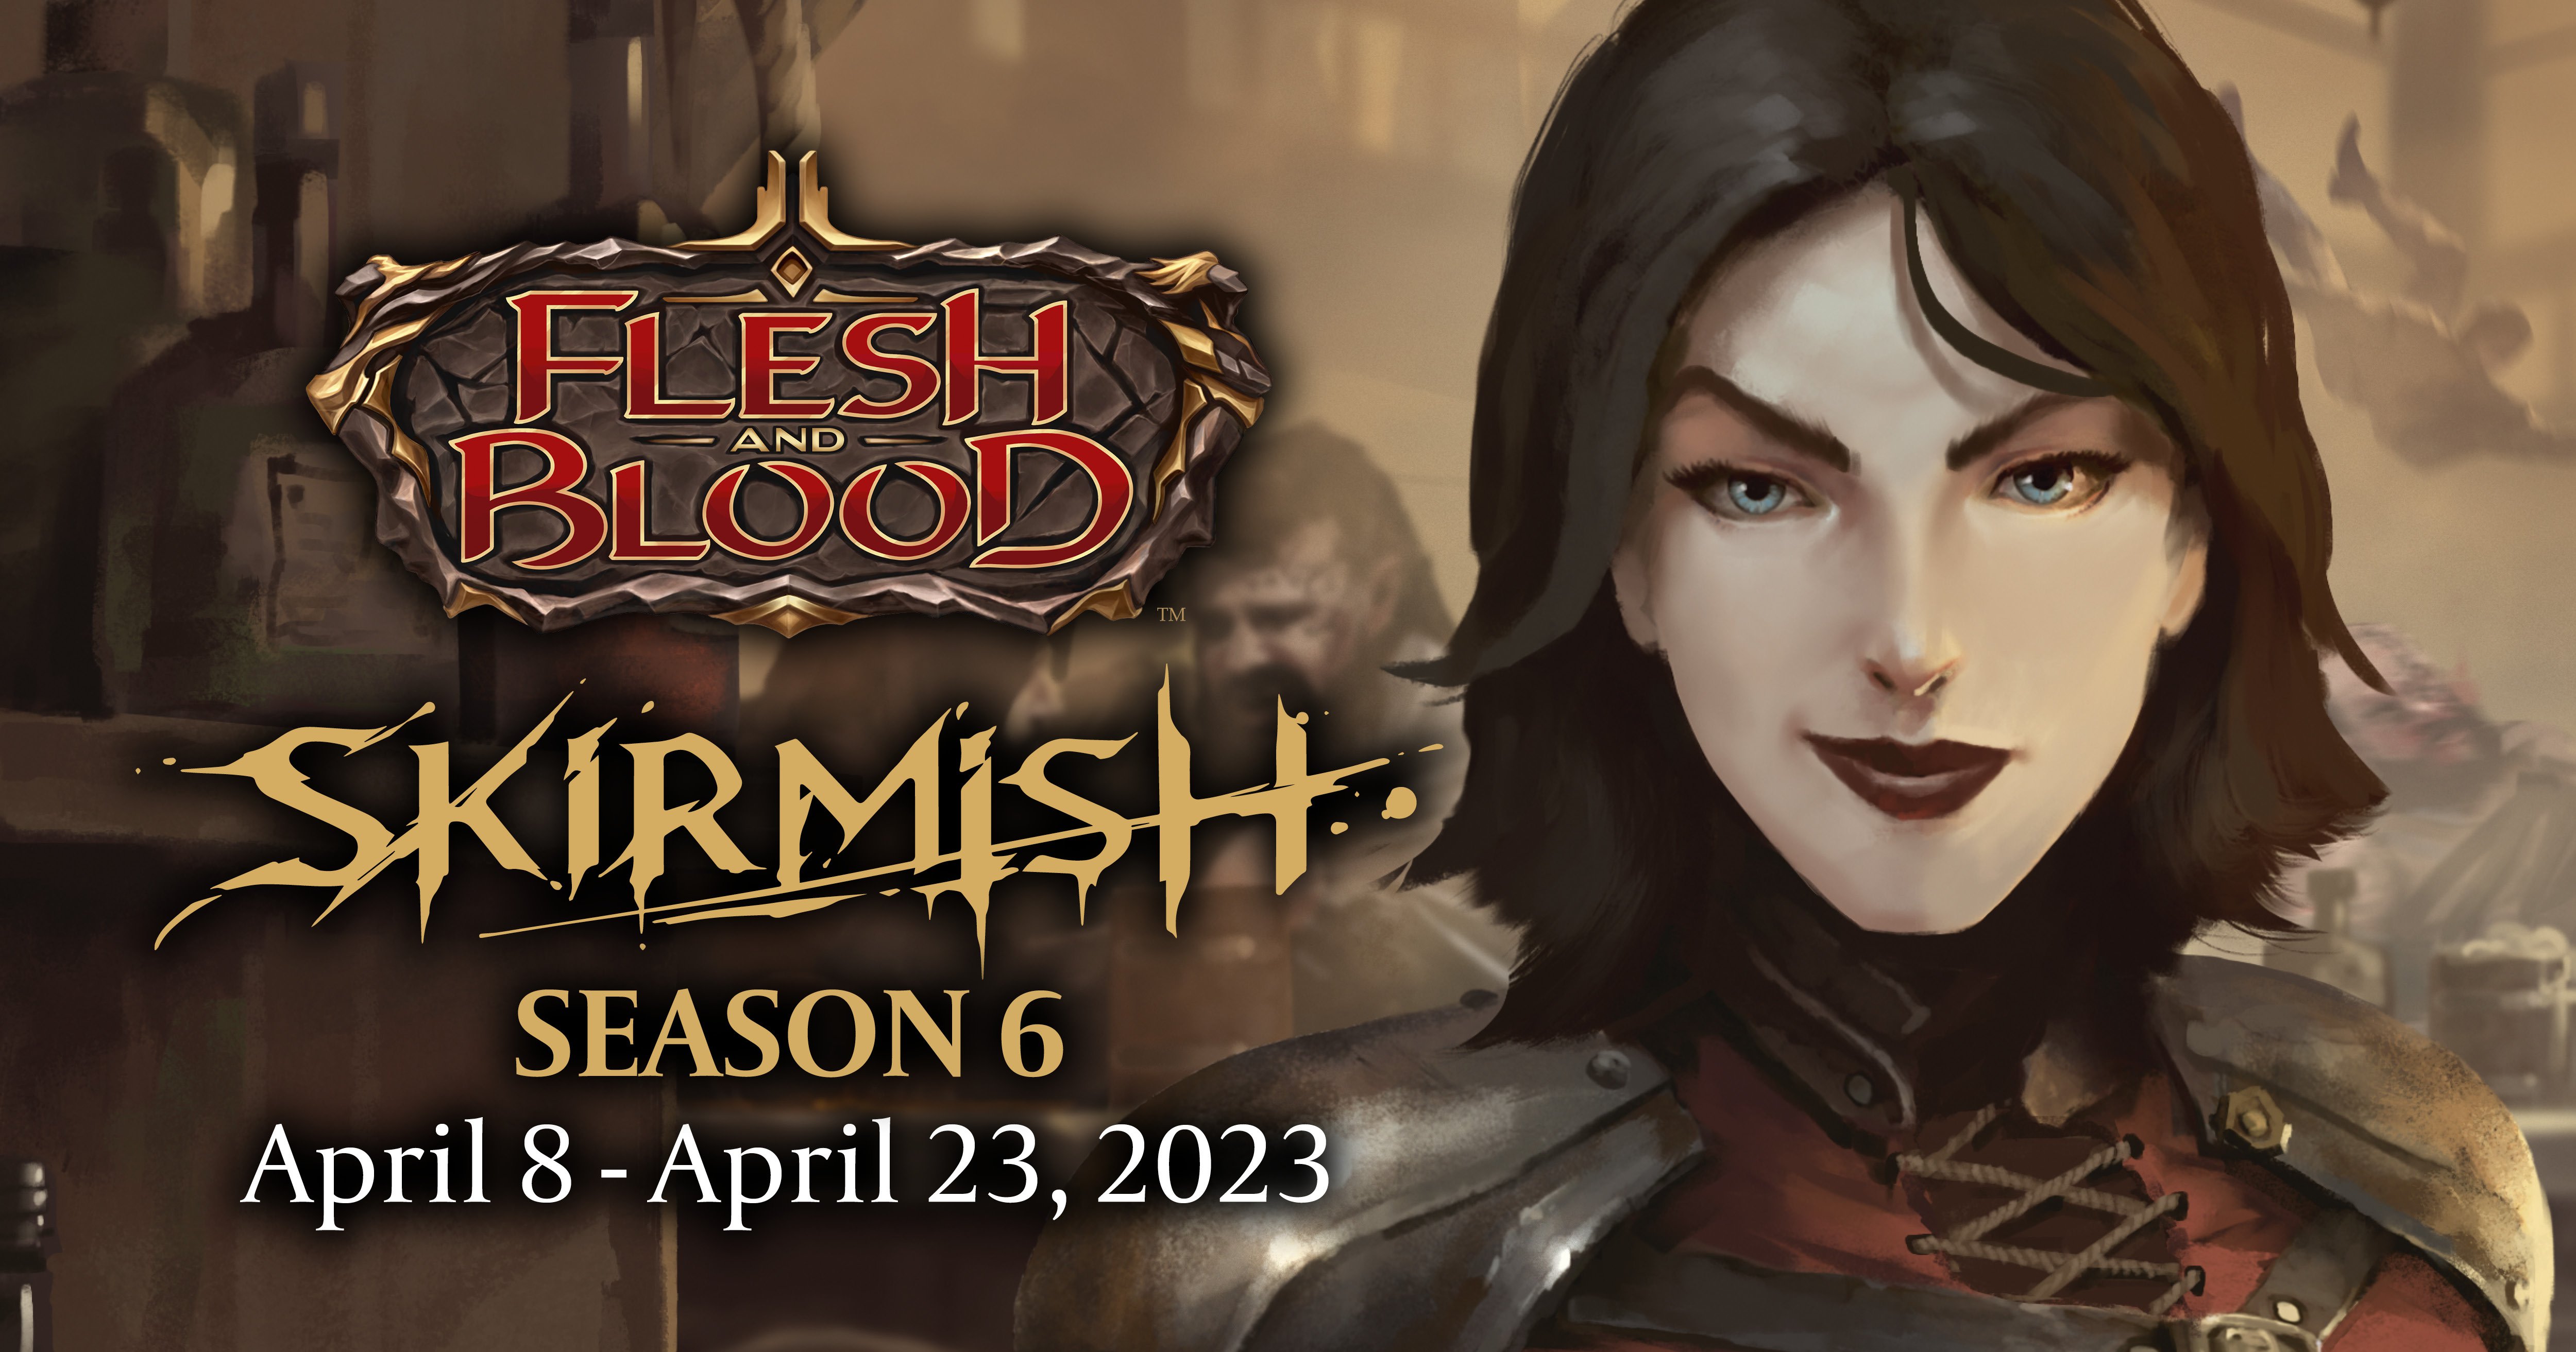 Skirmish season 6 banner